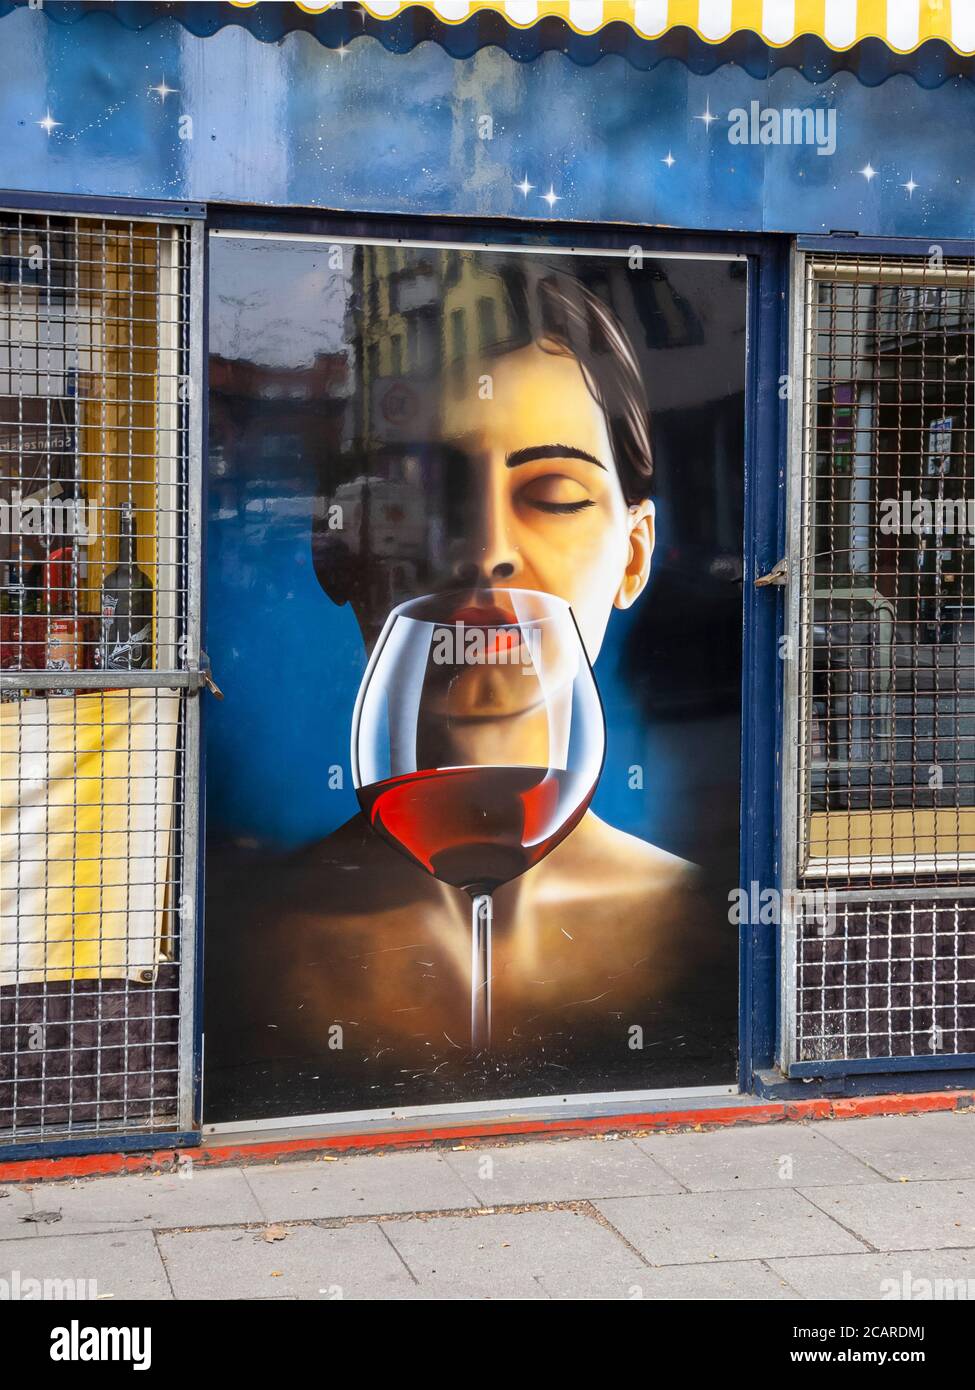 Illustrazione di una donna che ama il vino con gli occhi chiusi, Schanzenviertel, Amburgo, Germania, aprile 22, 2012. Foto Stock